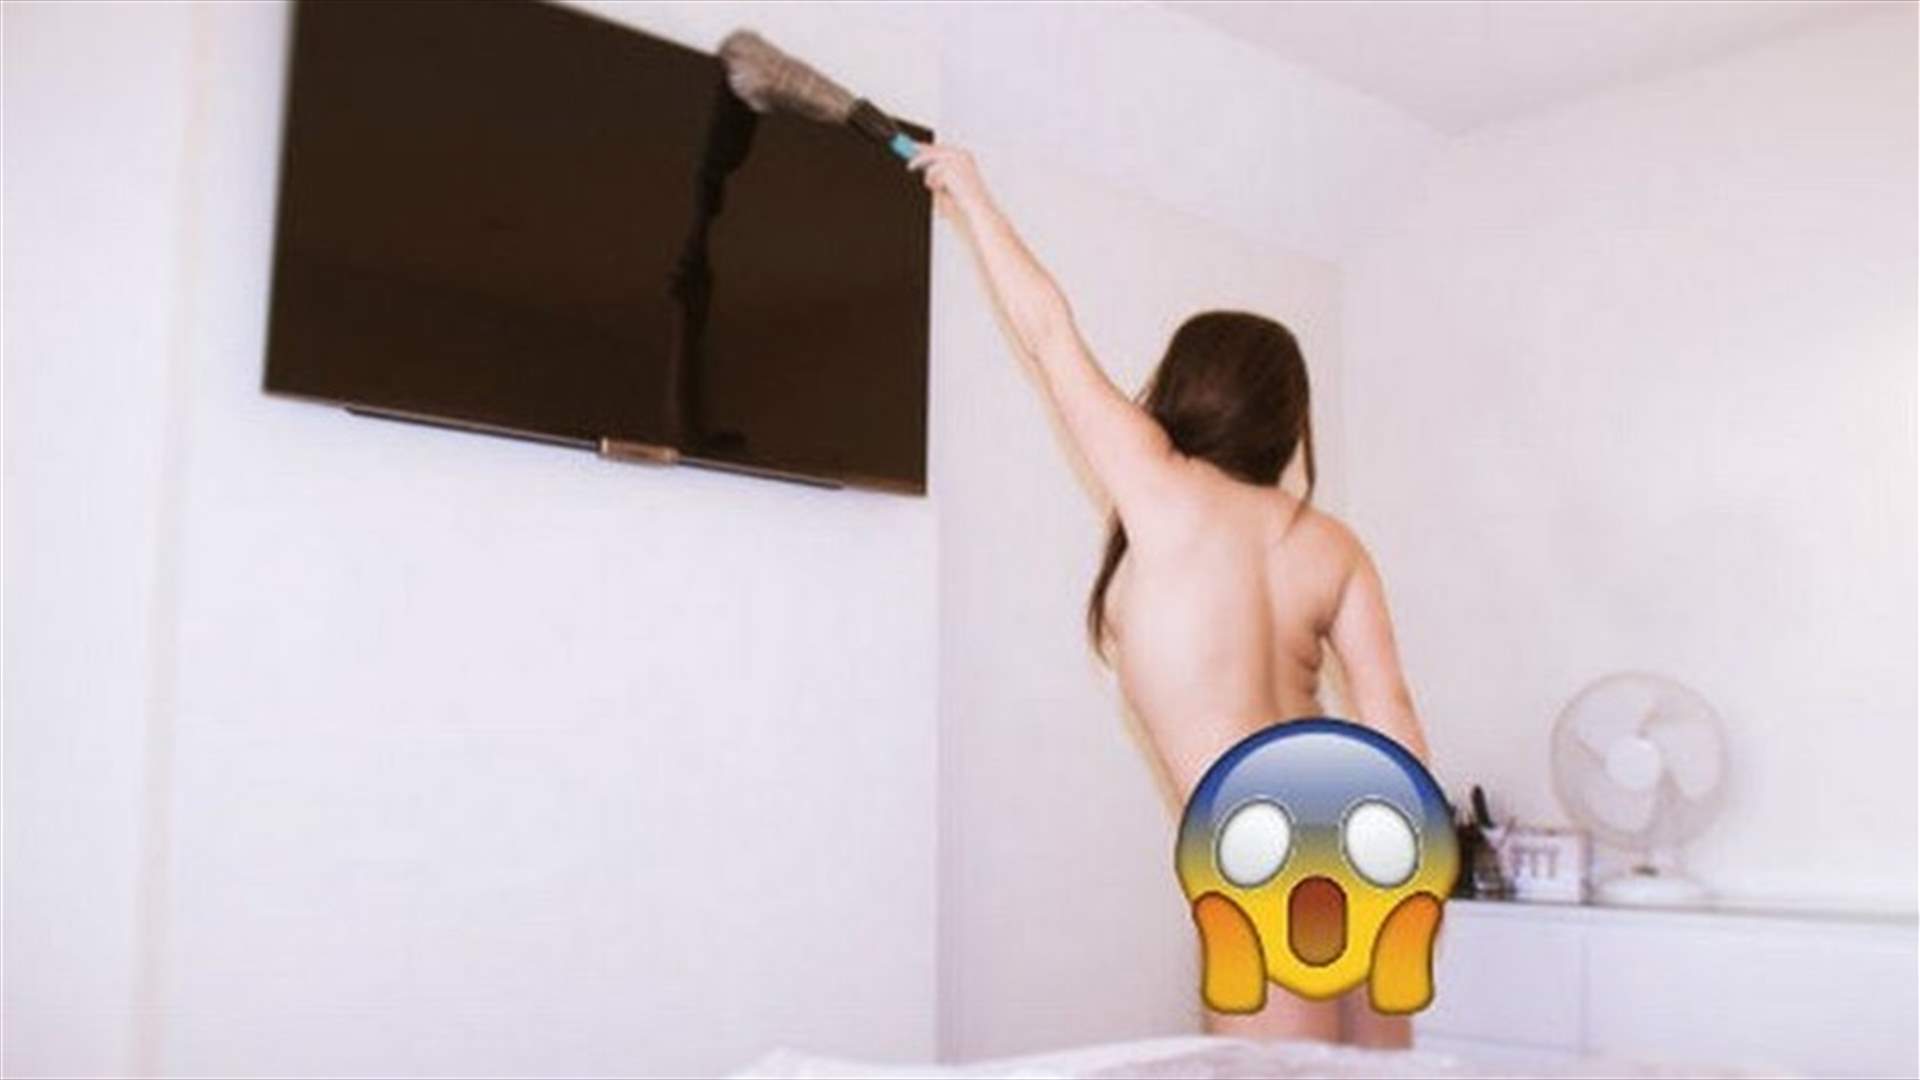 مطلوب عاملات نظافة للمنازل... شرط العمل من دون ملابس!